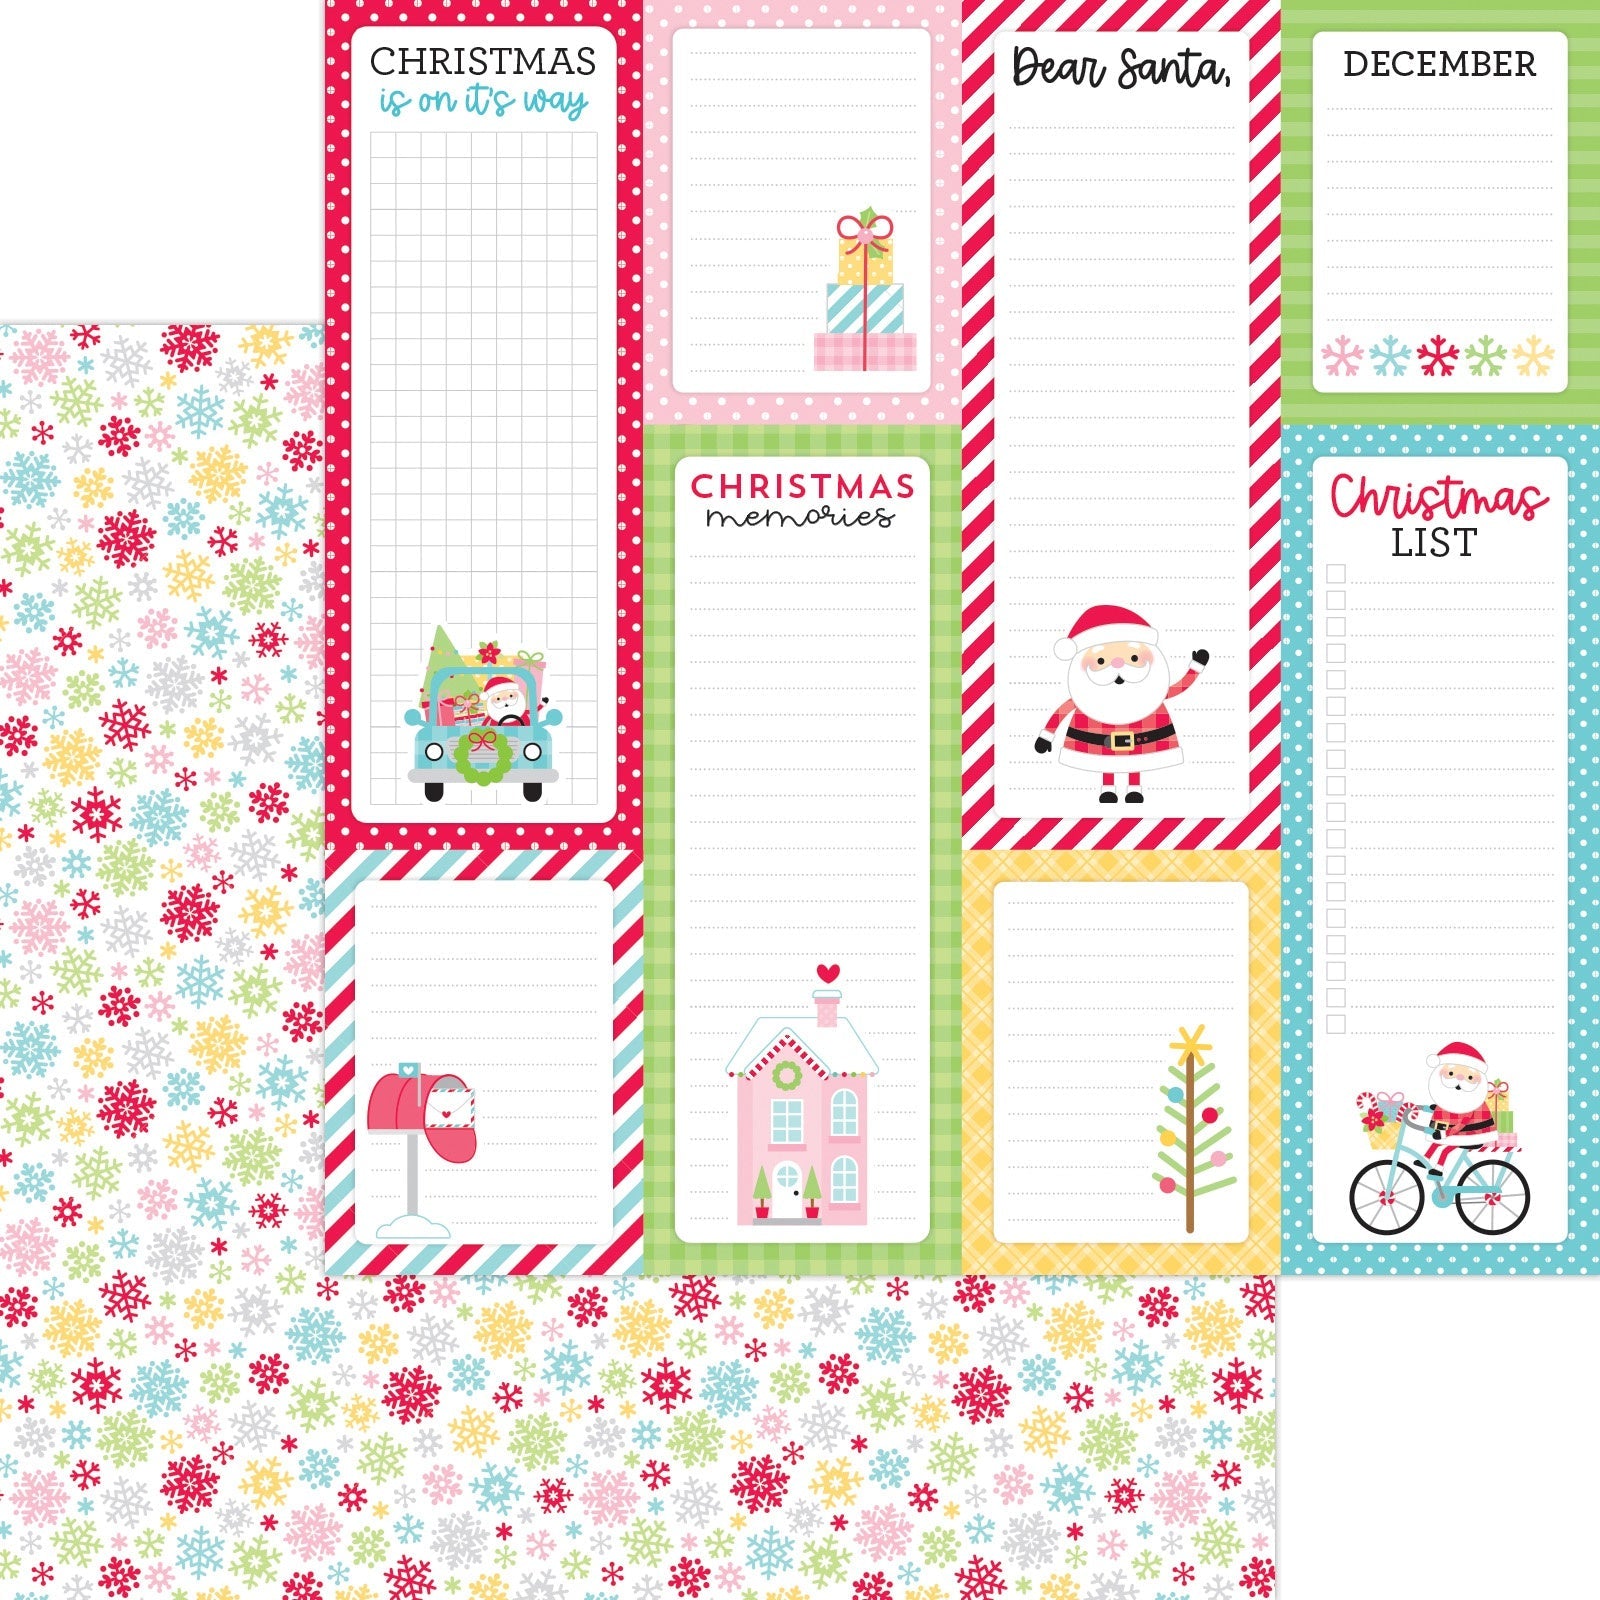 Doodlebug Design - Candy Cane Lane Textured Cardstock - 12x12